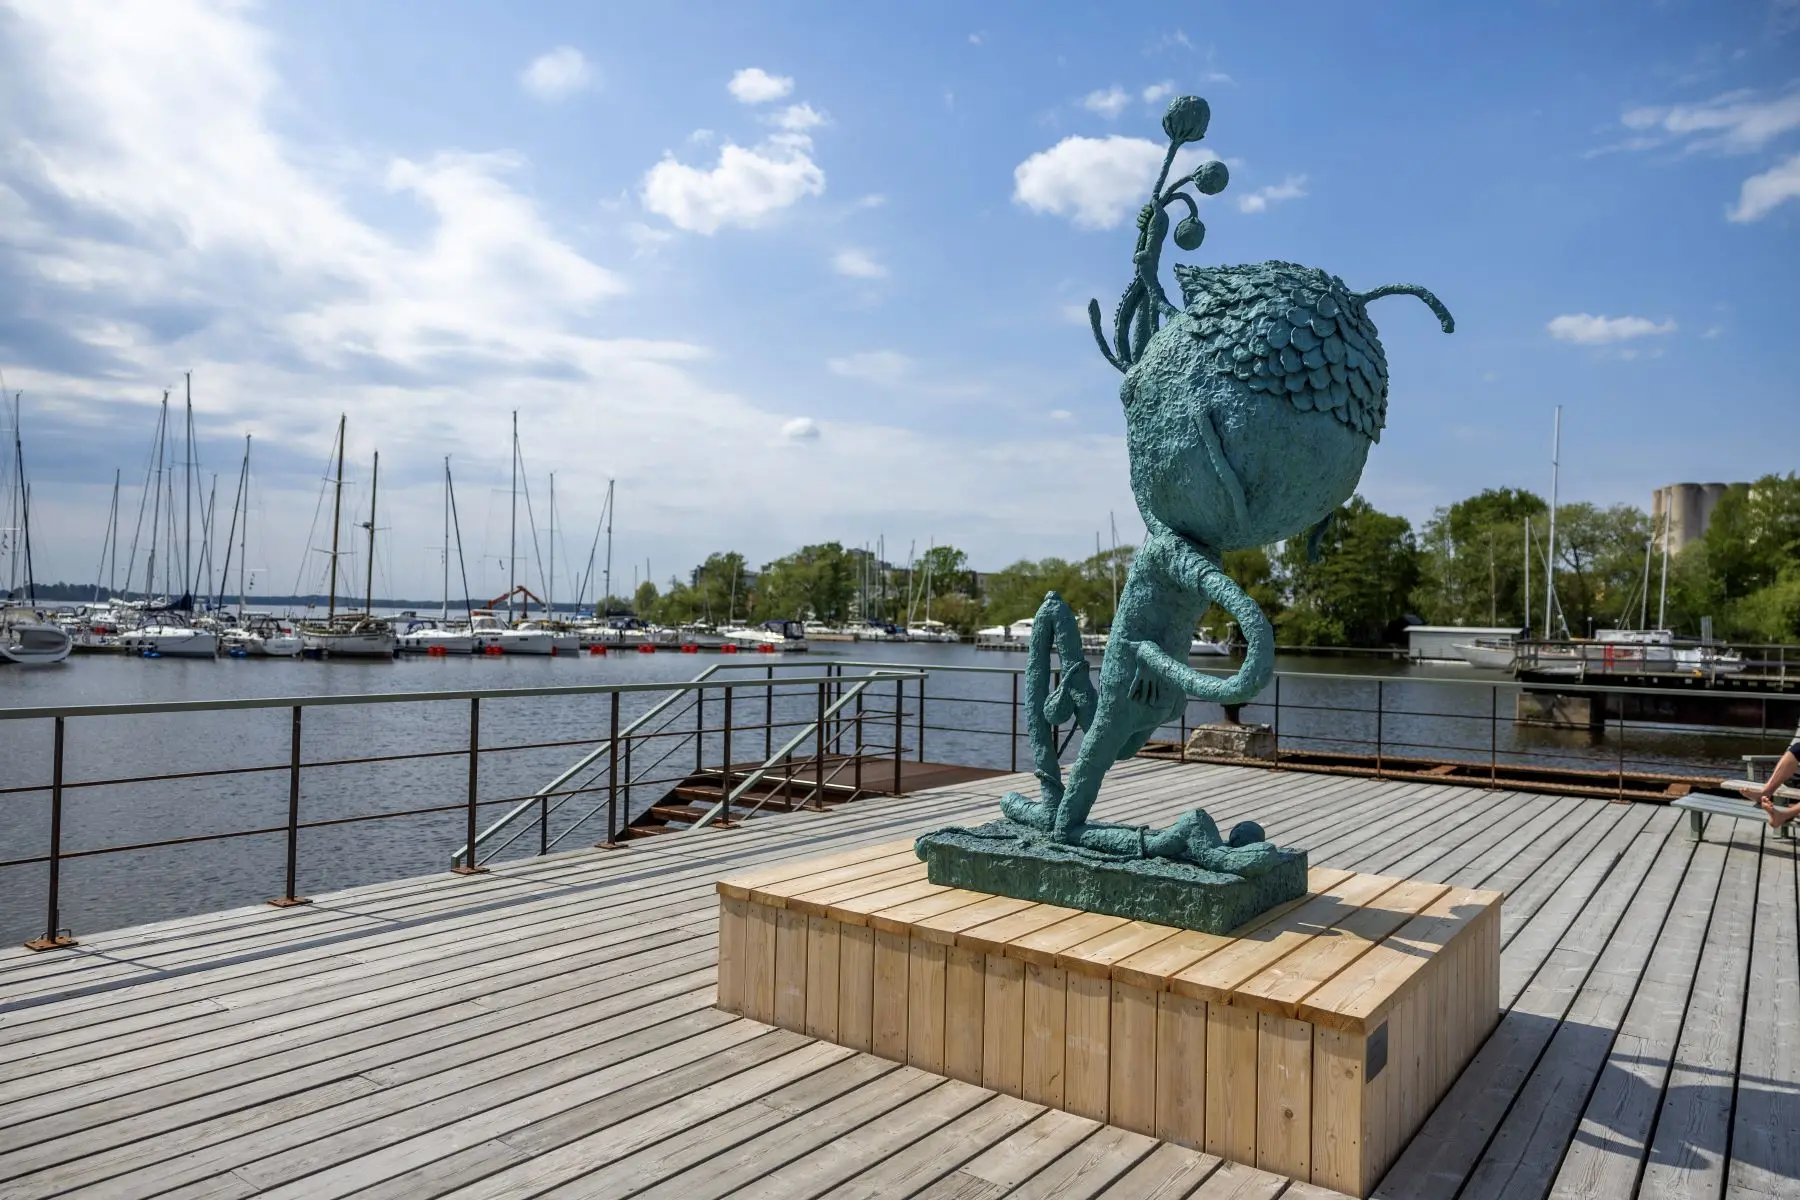 Invigning av skulpturserien Min plats – offentligt konstverk längs Kajstråket